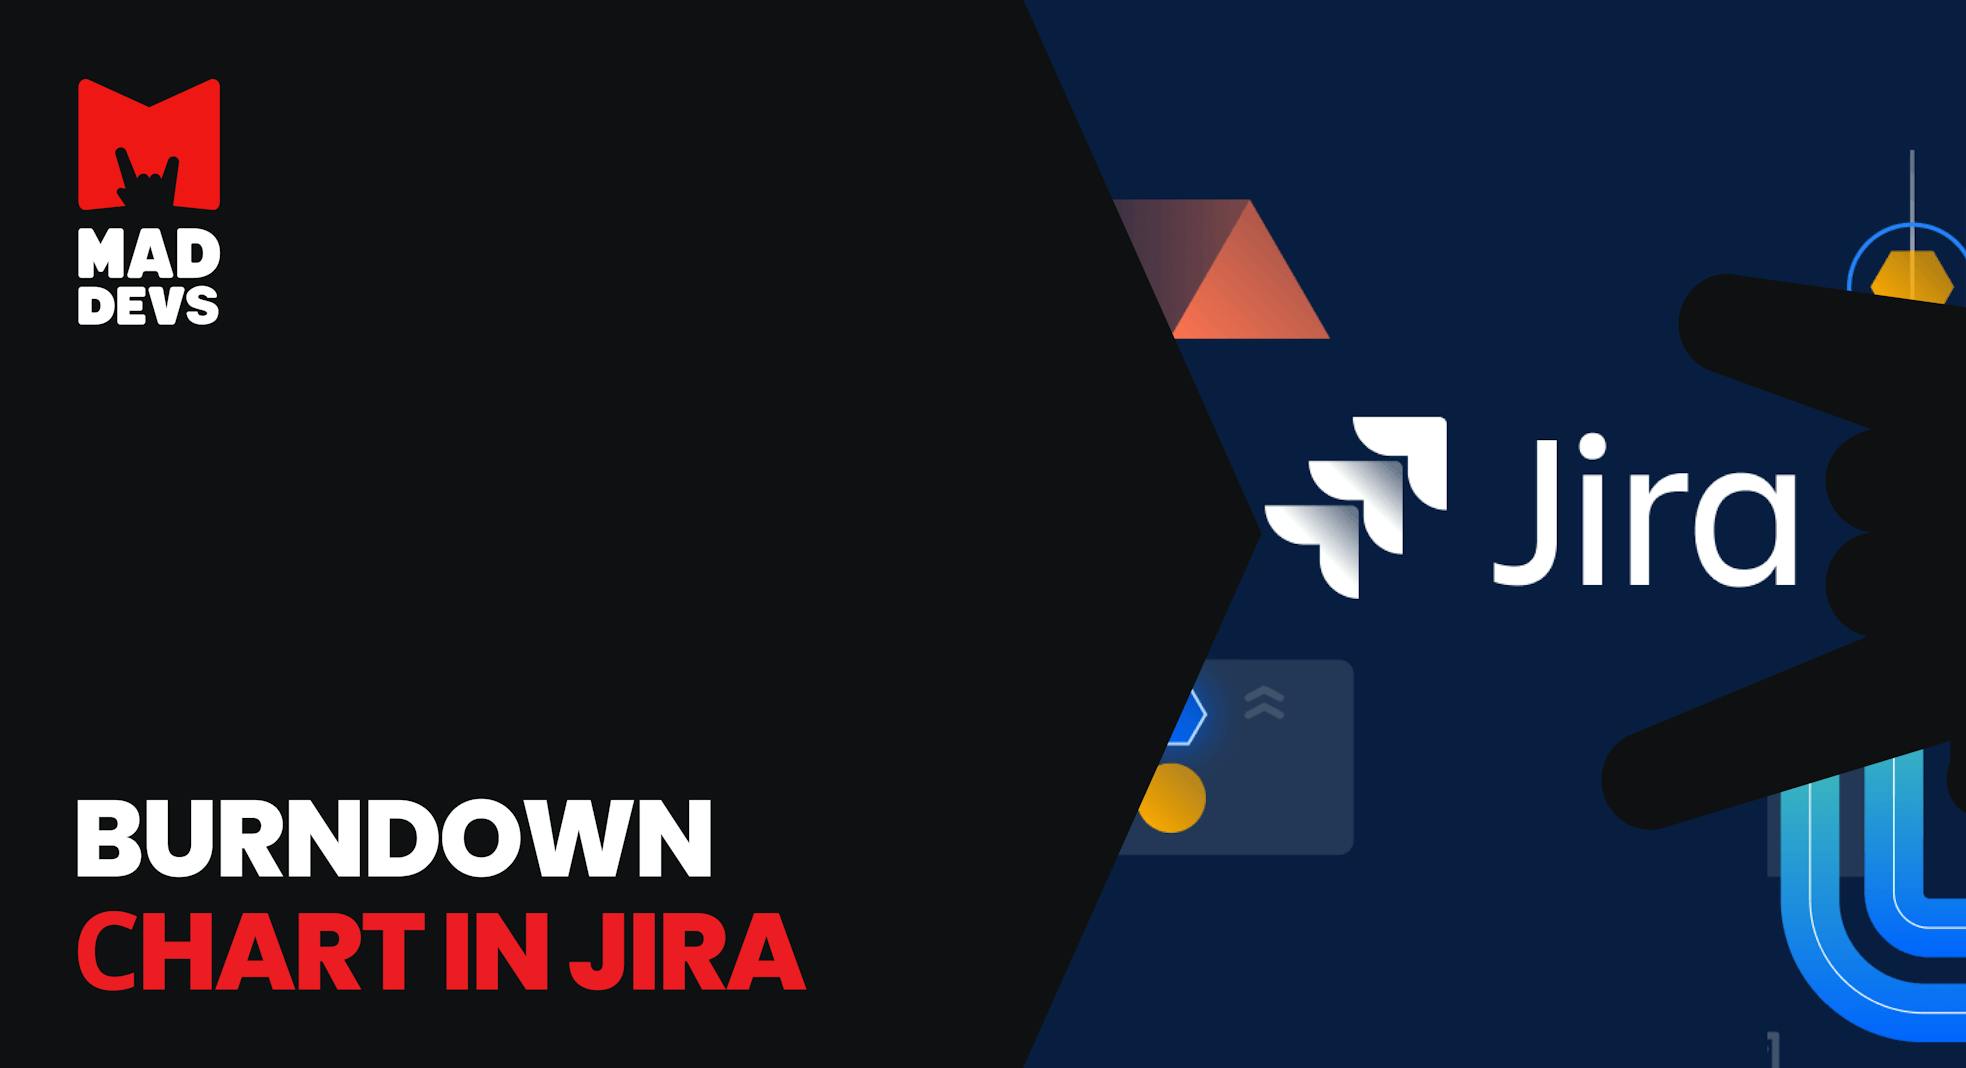 Burndown Chart in Jira